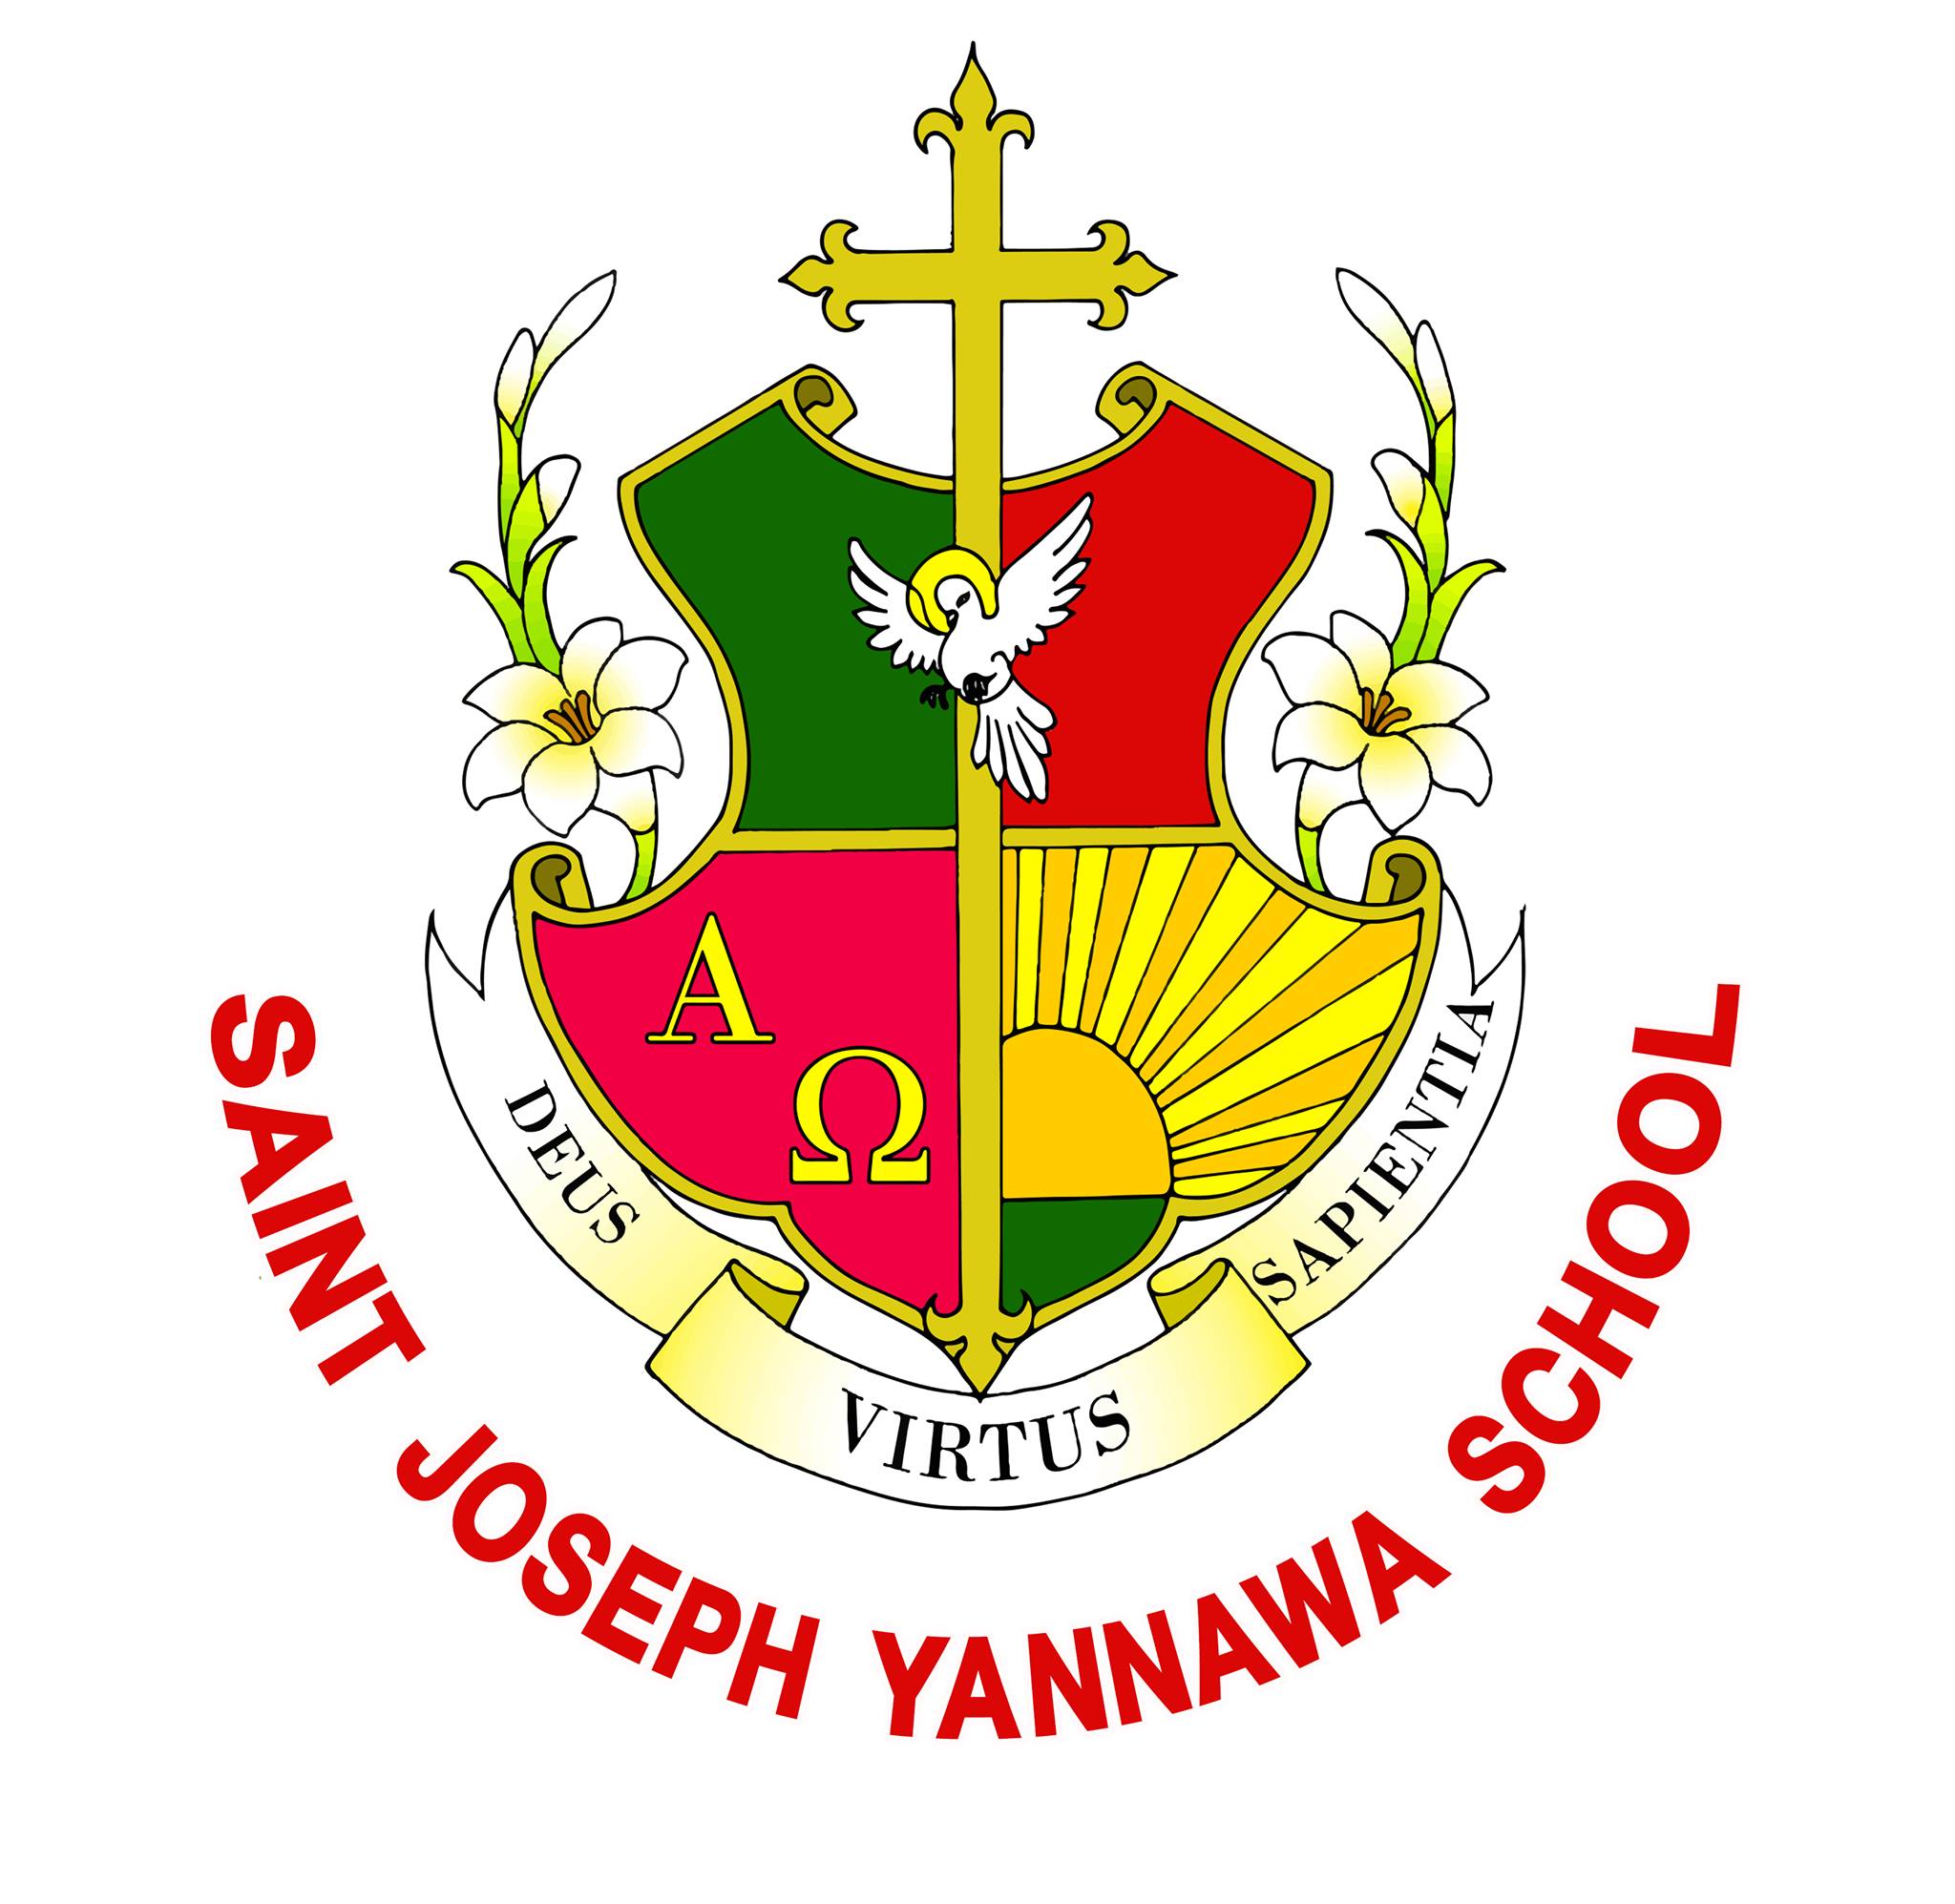 โรงเรียนเซนต์ยอแซฟยานนาวา logo โลโก้